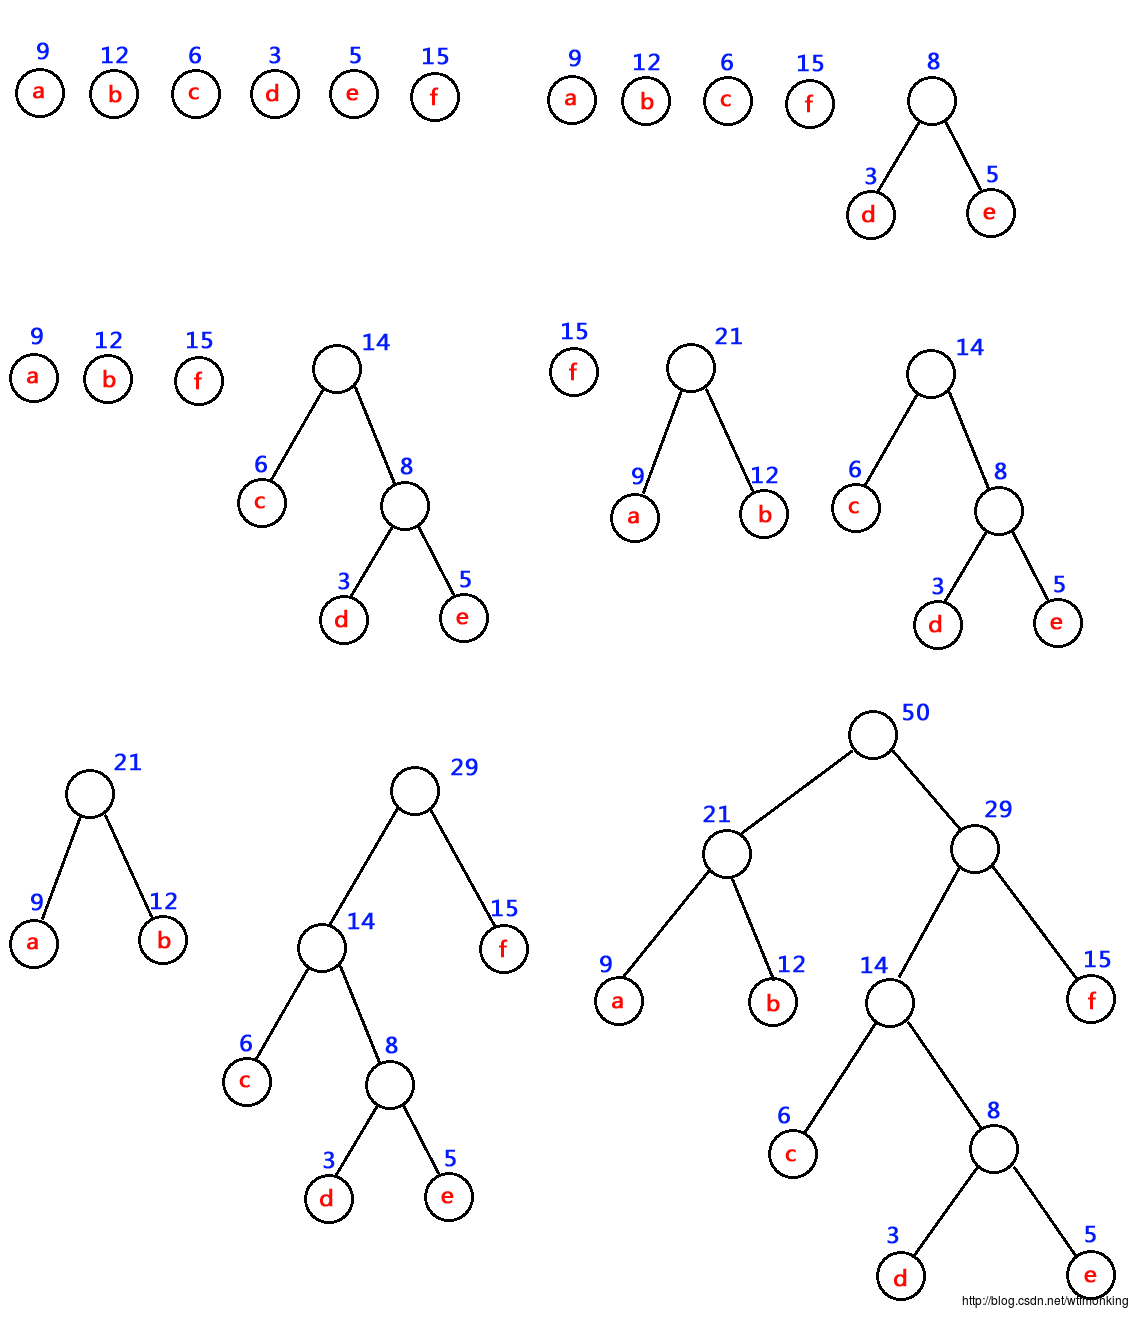 哈夫曼树的构造过程是什么样的_哈夫曼树的构造过程是什么样的图片